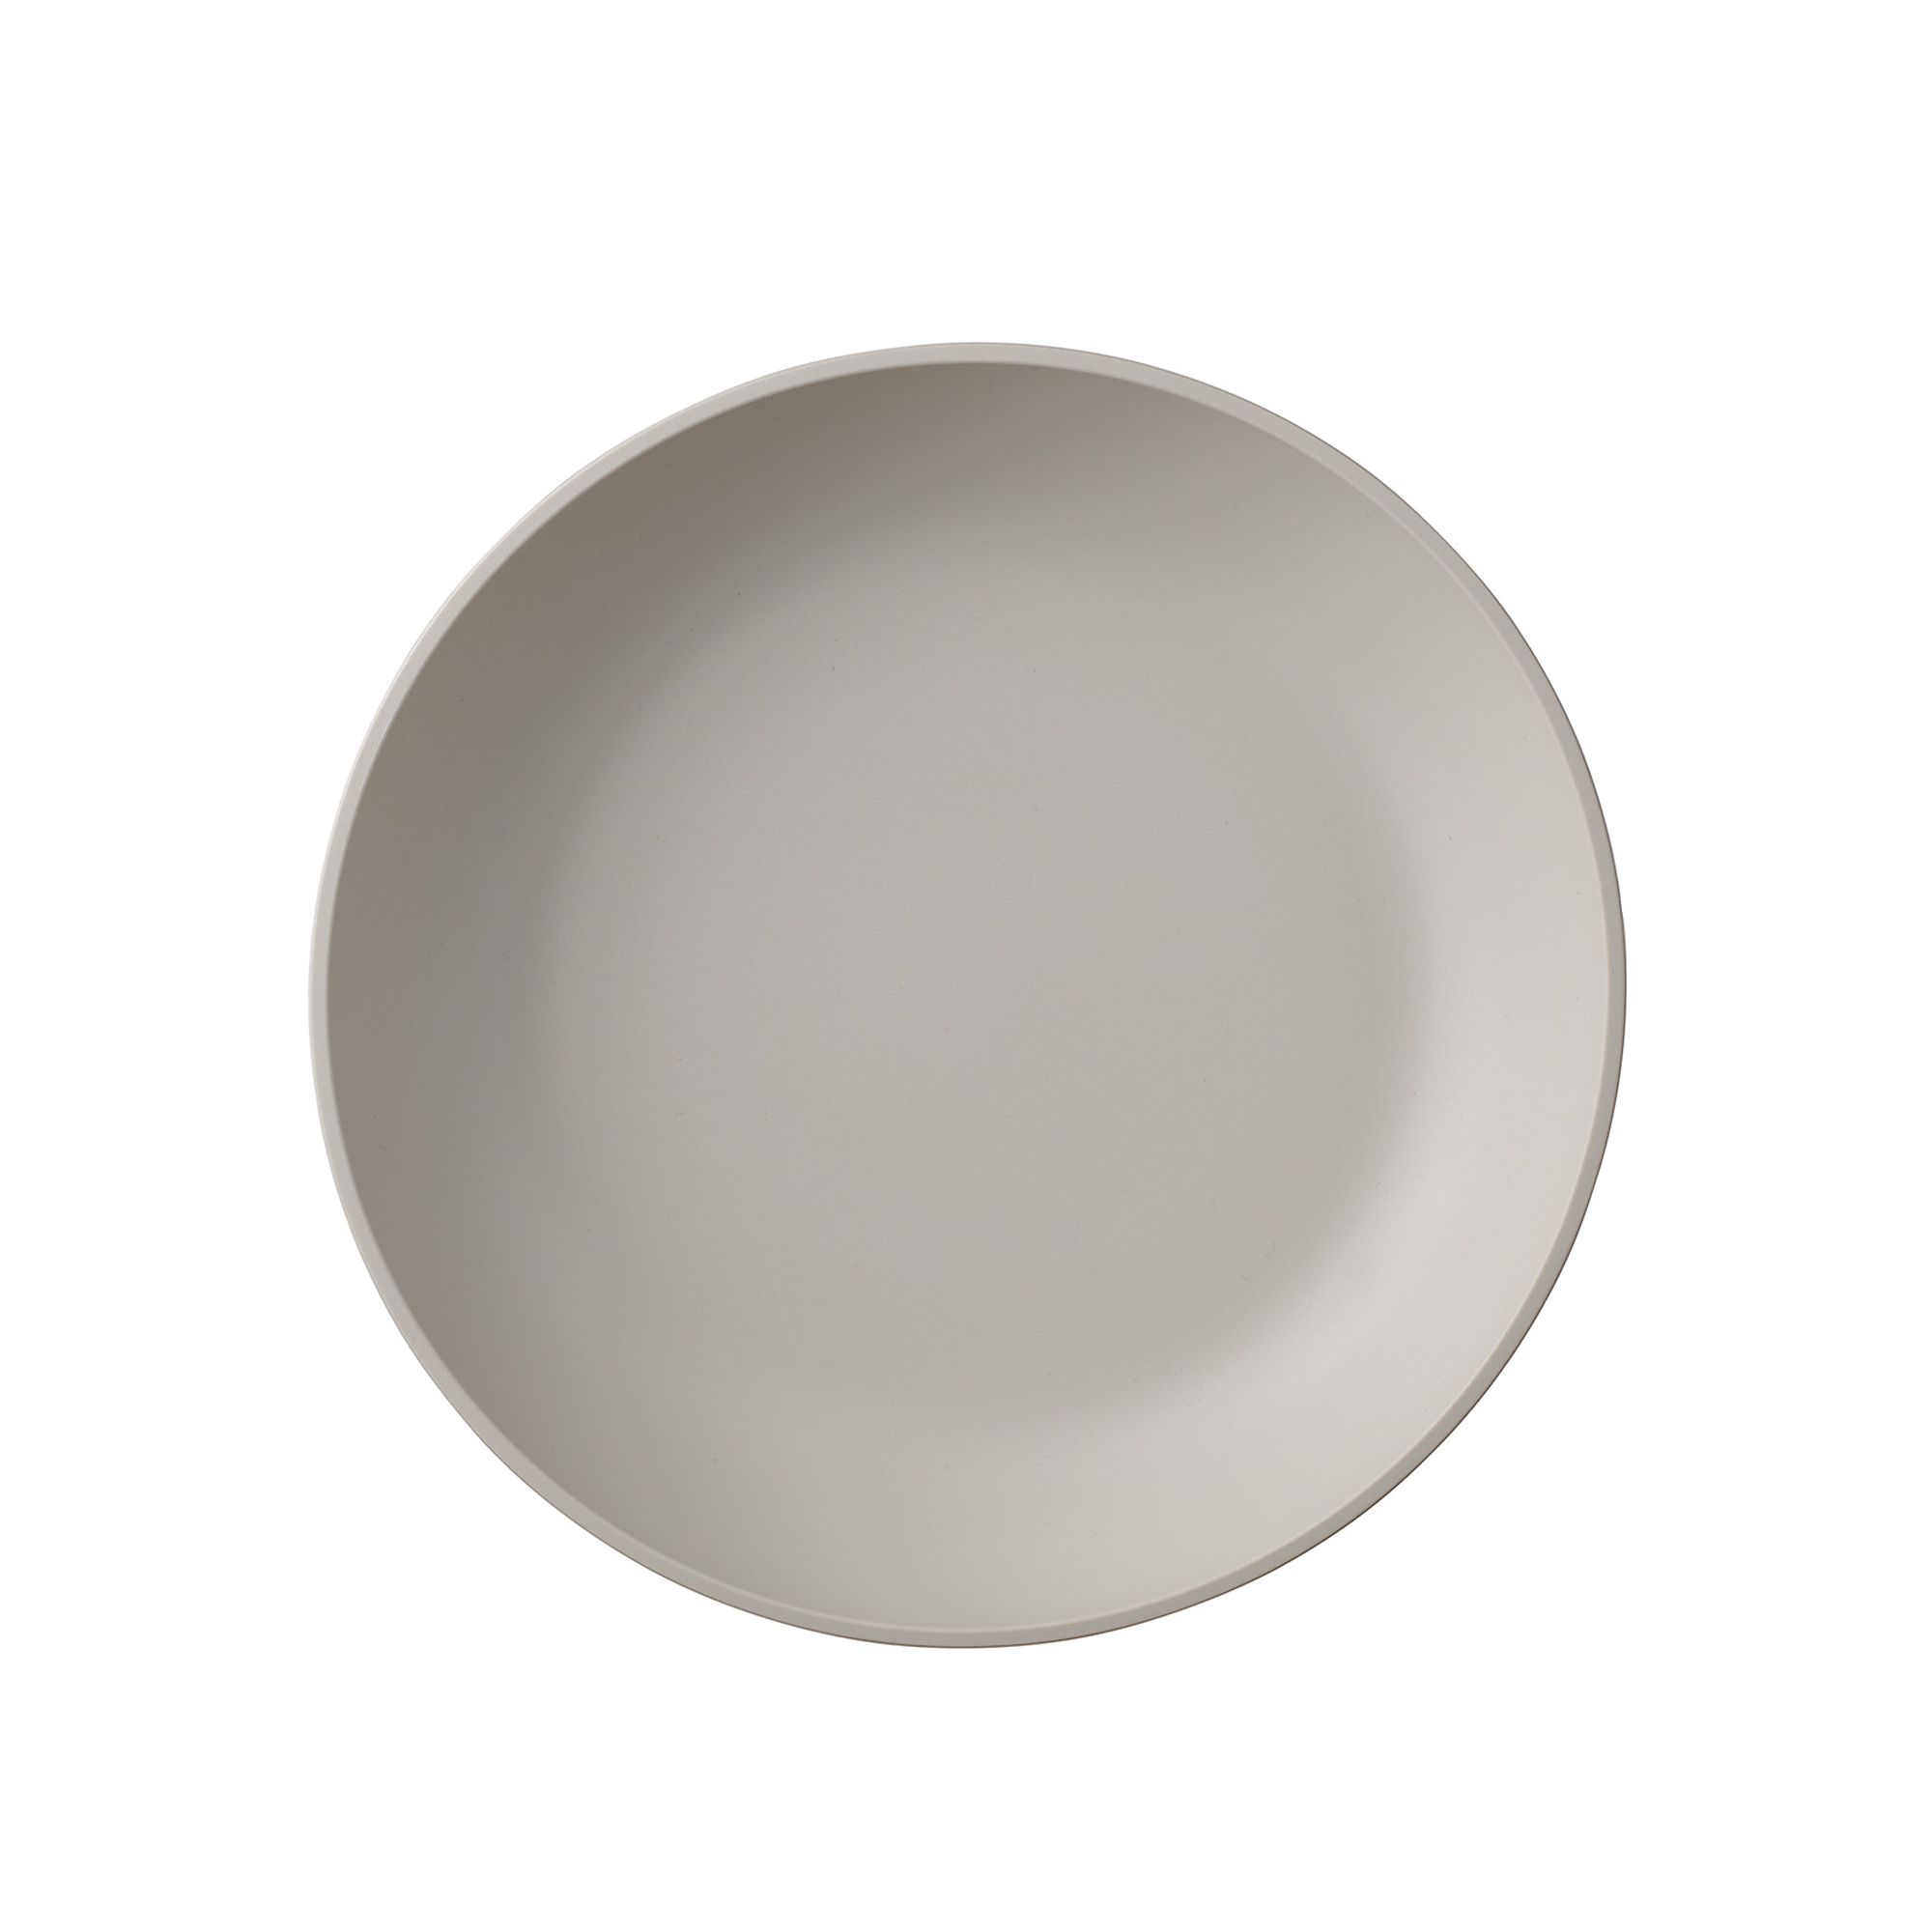 Mepal - Silueta soup plate - 210 mm - Nordic white